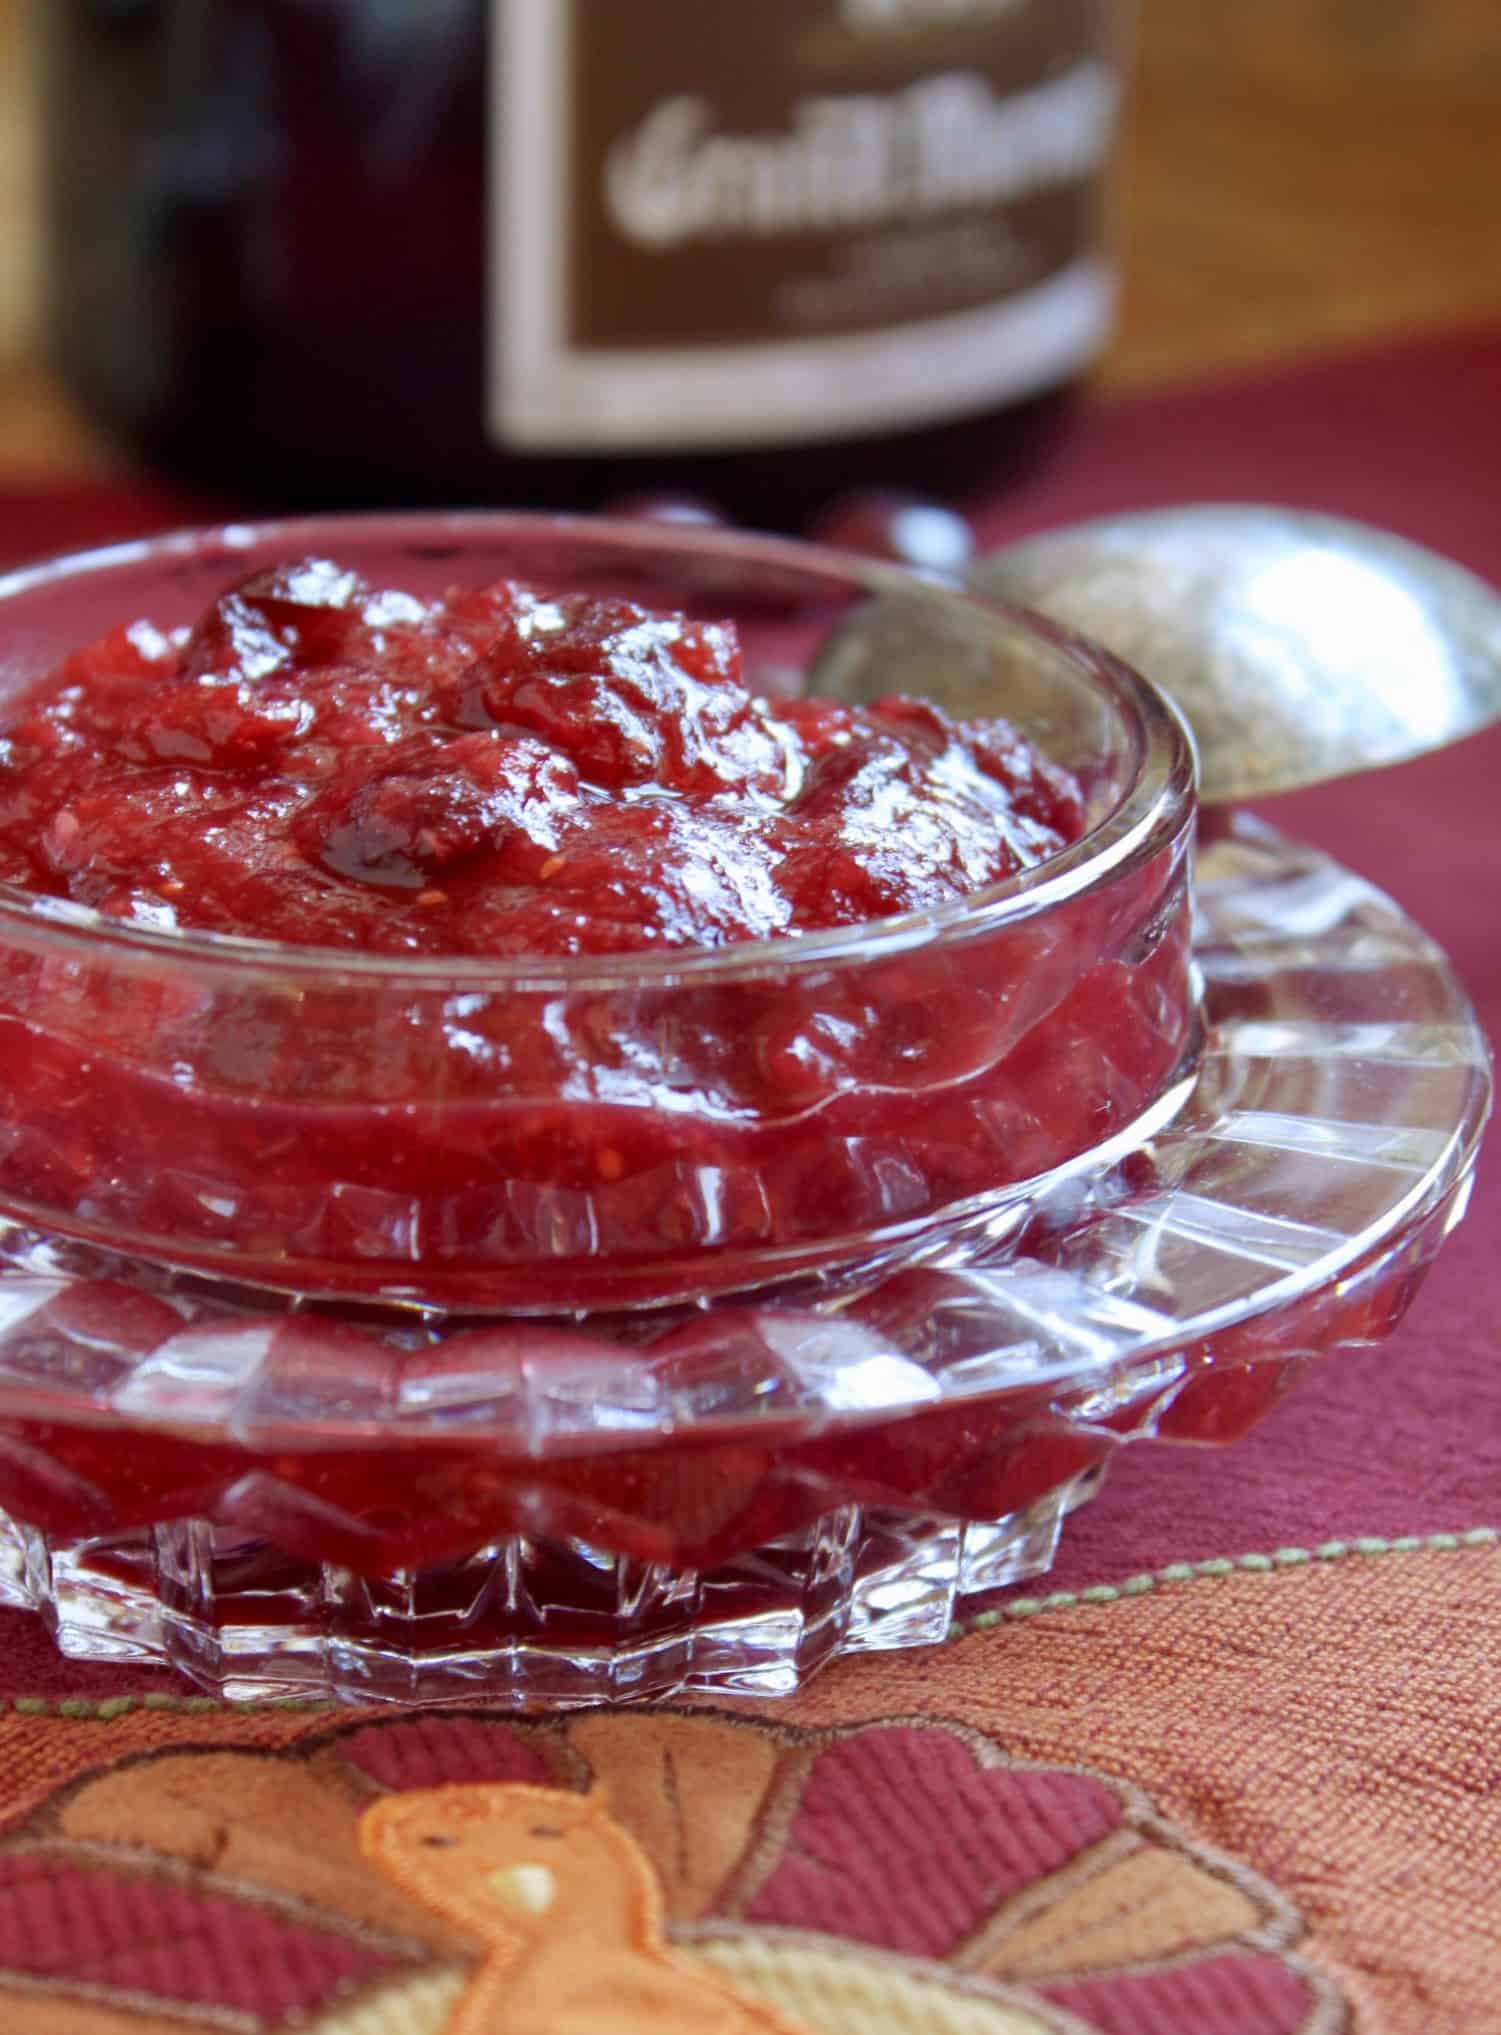 Grand Marnier Orange Cranberry Sauce homemade recipe